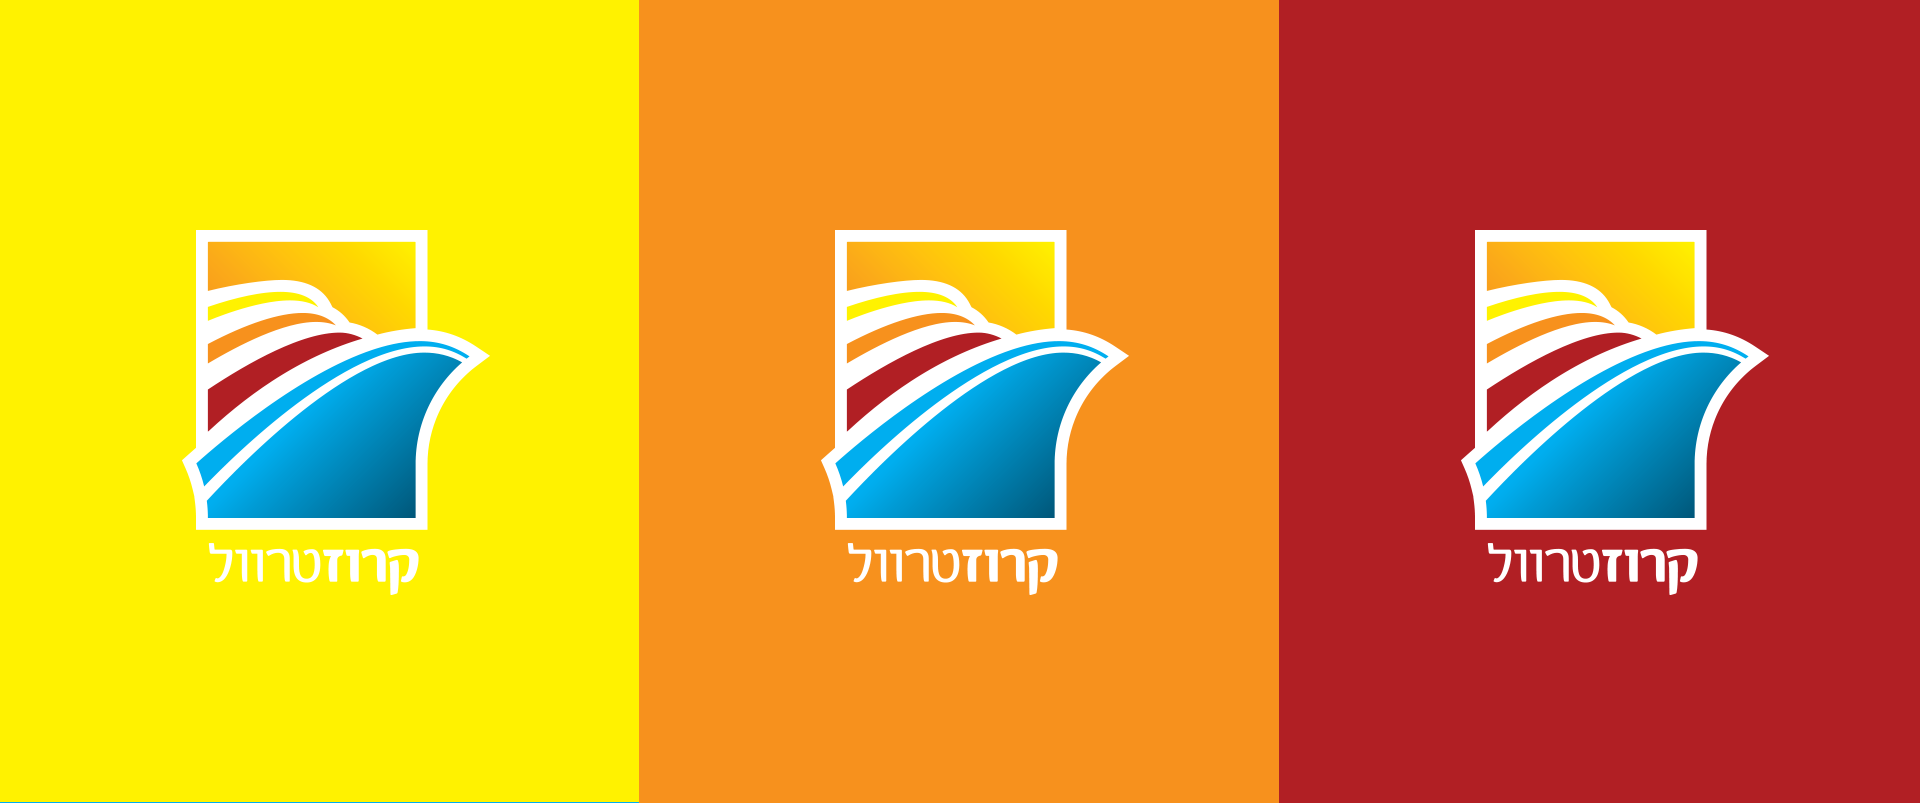 עיצוב לוגו - השתלבות על רקעים צבעוניות